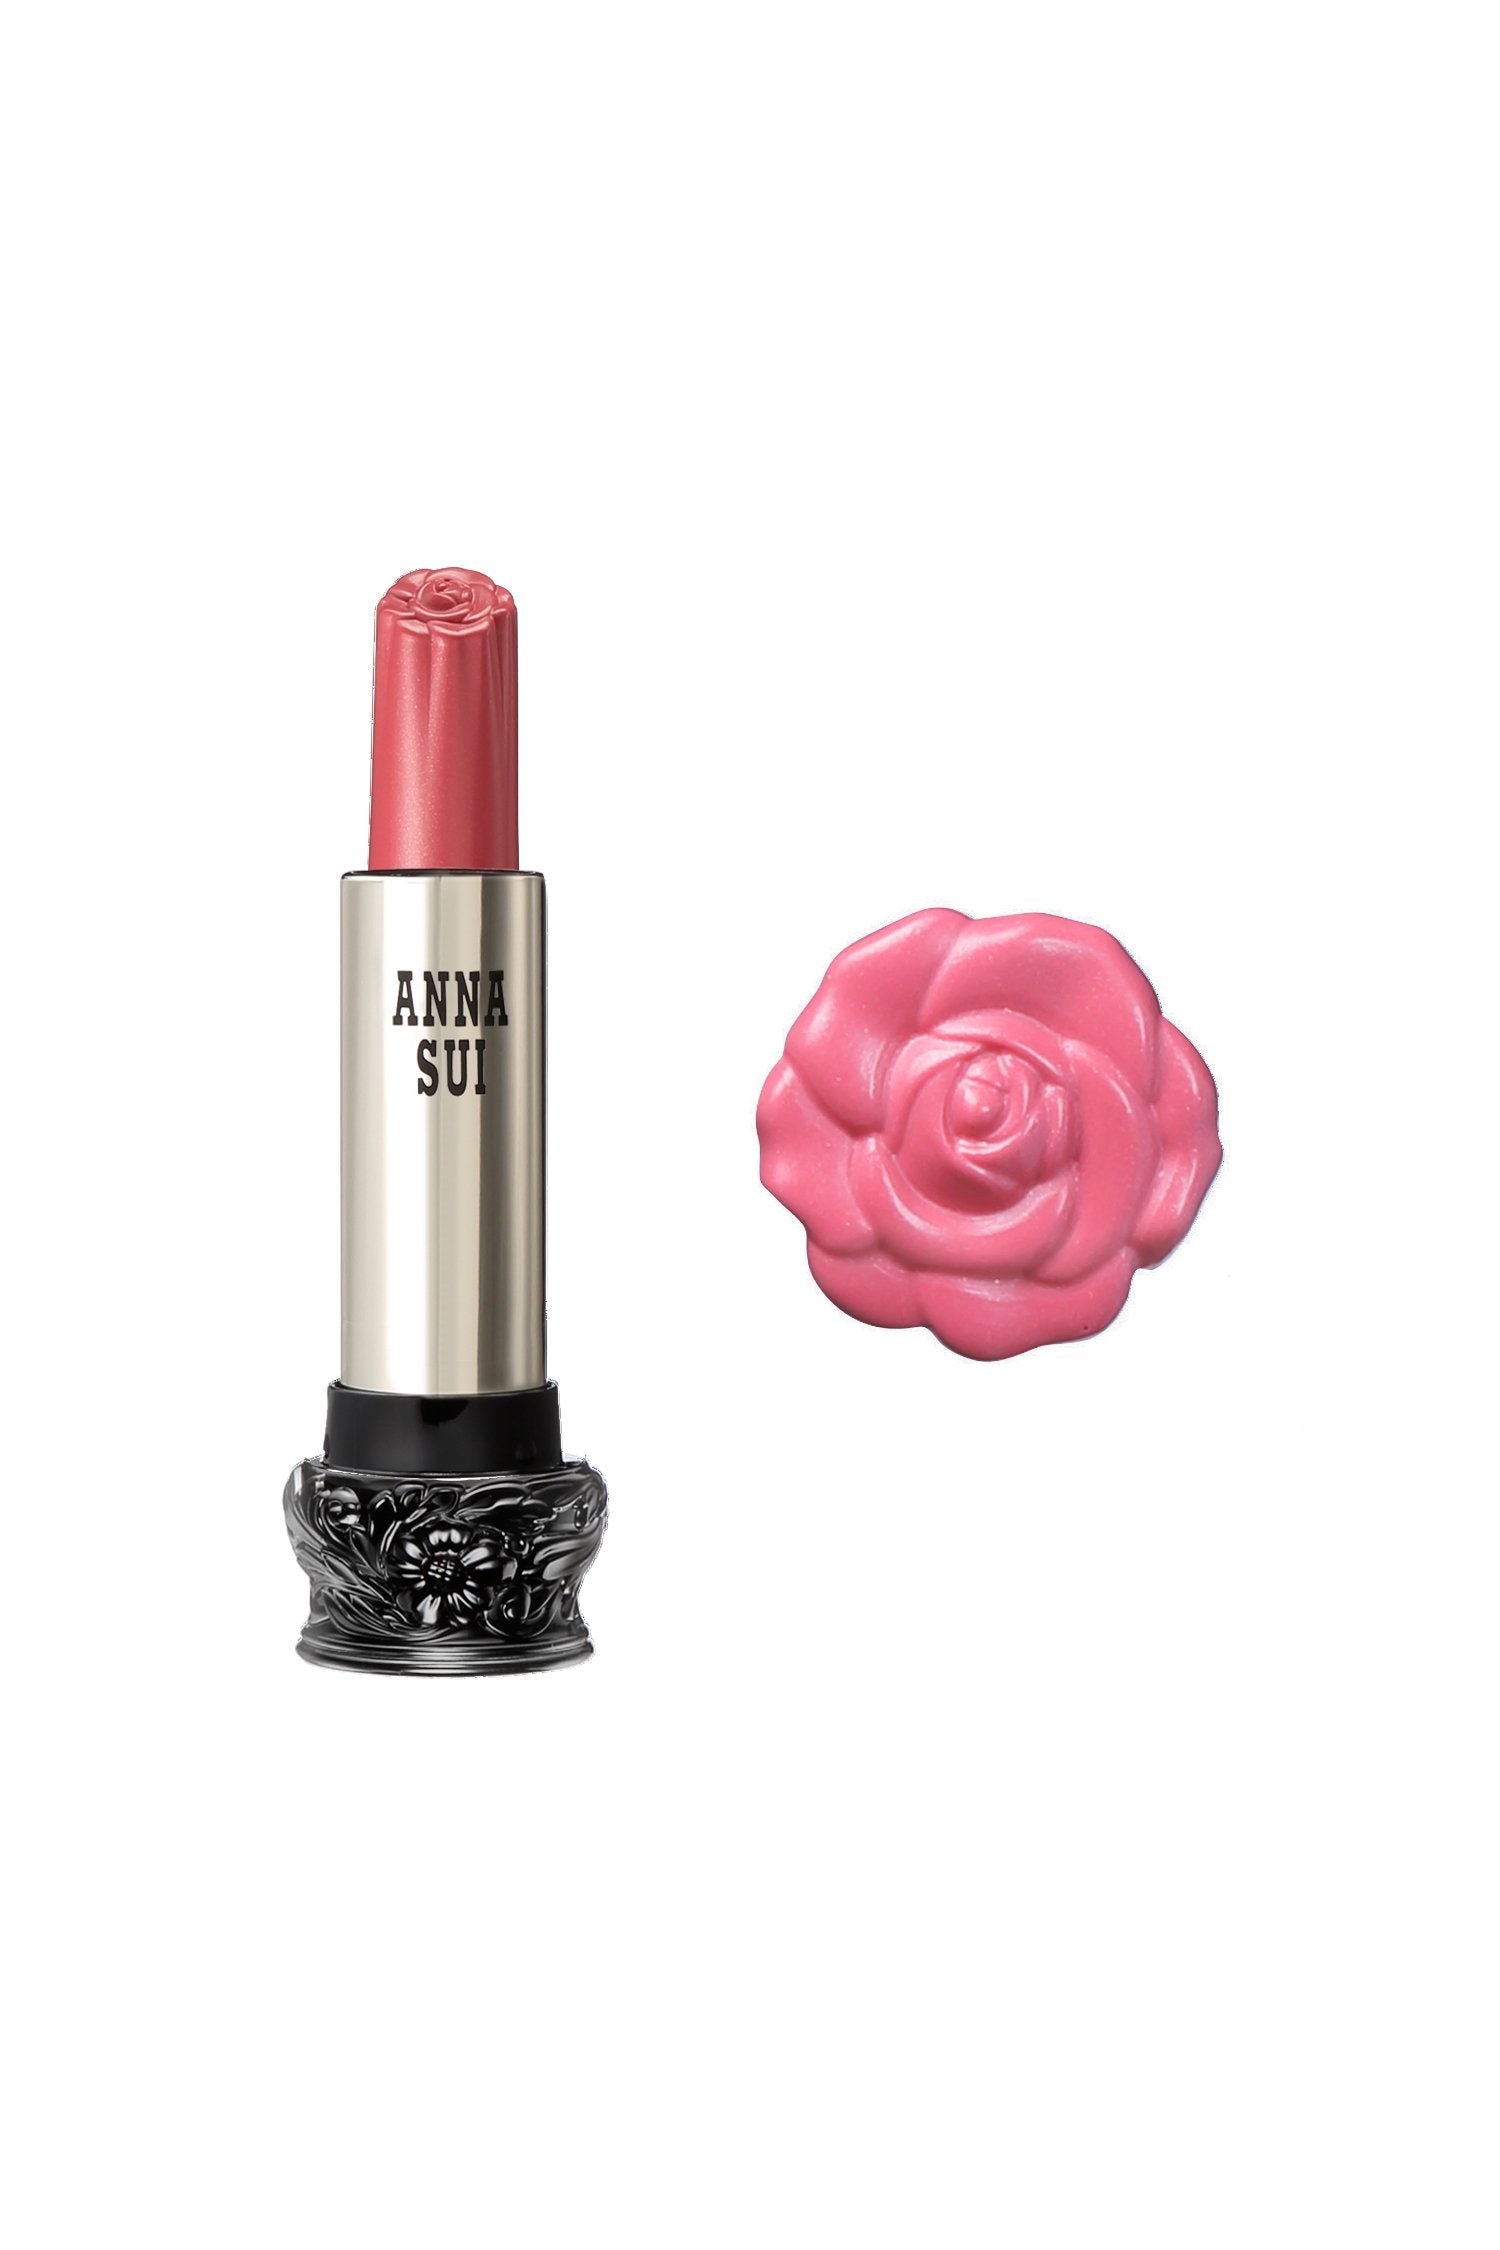 301 - Rouge à lèvres Dianthus rose F : Fairy Flower, dans un récipient cylindrique, large base noire, motif floral gravé, corps métallique